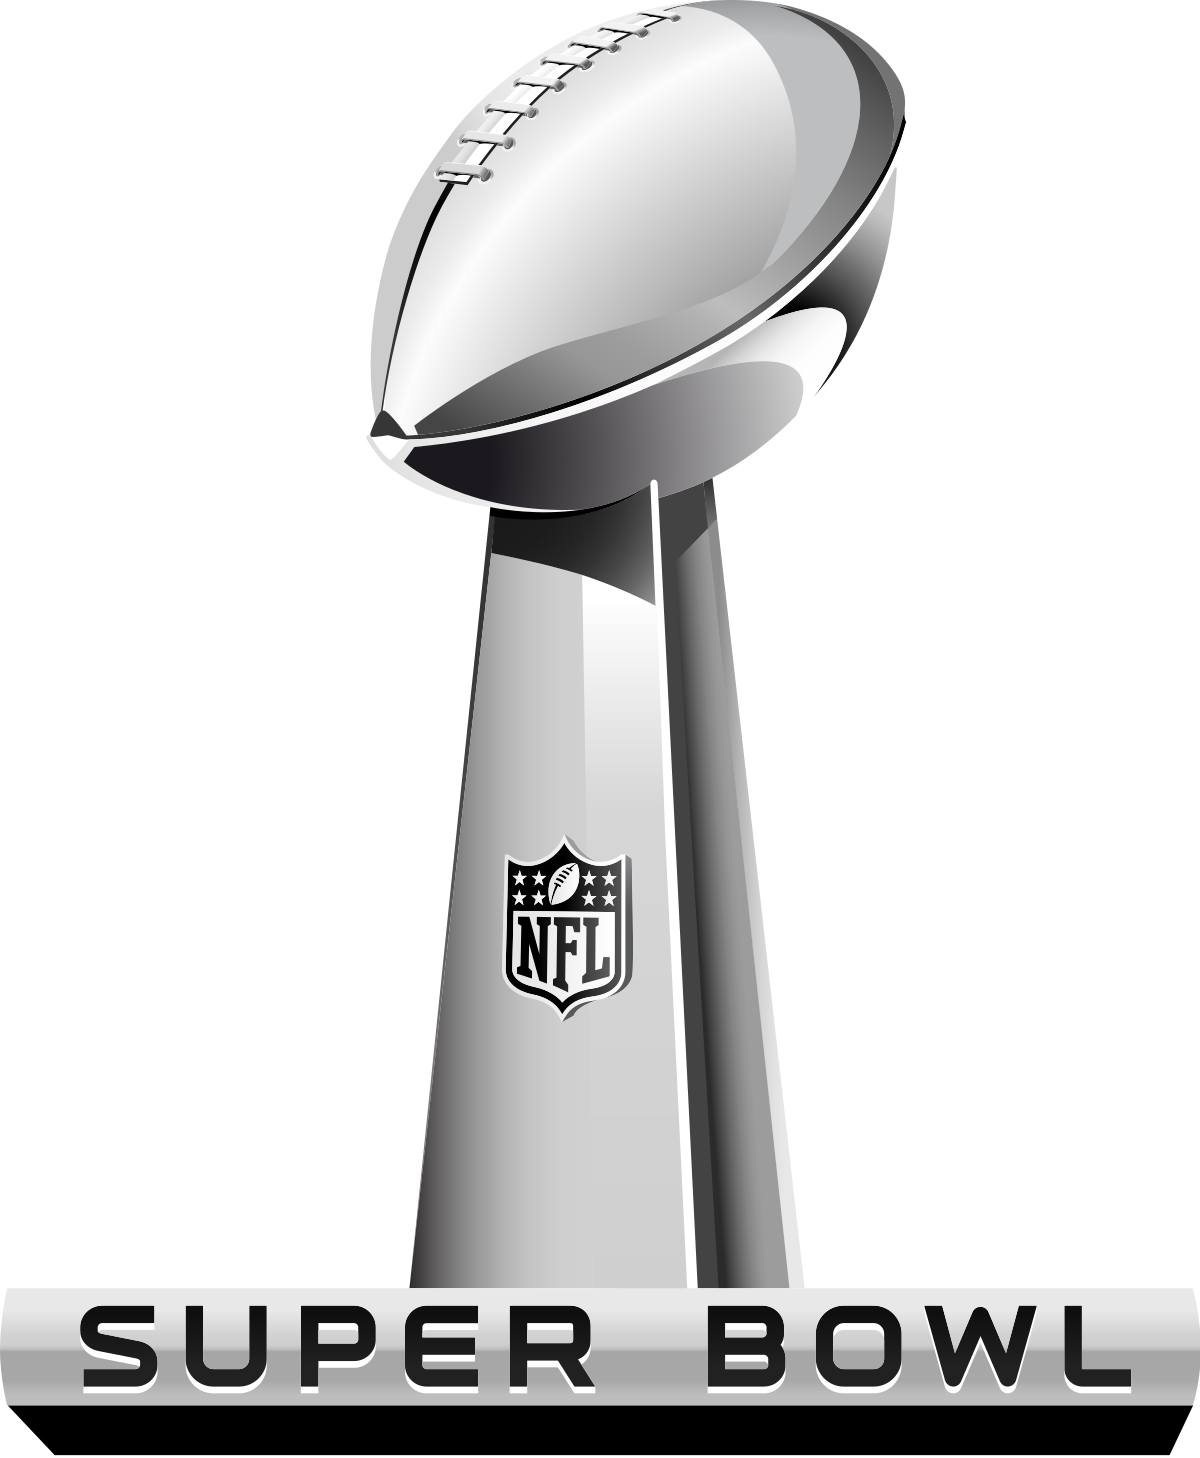 Super Bowl Sunday!